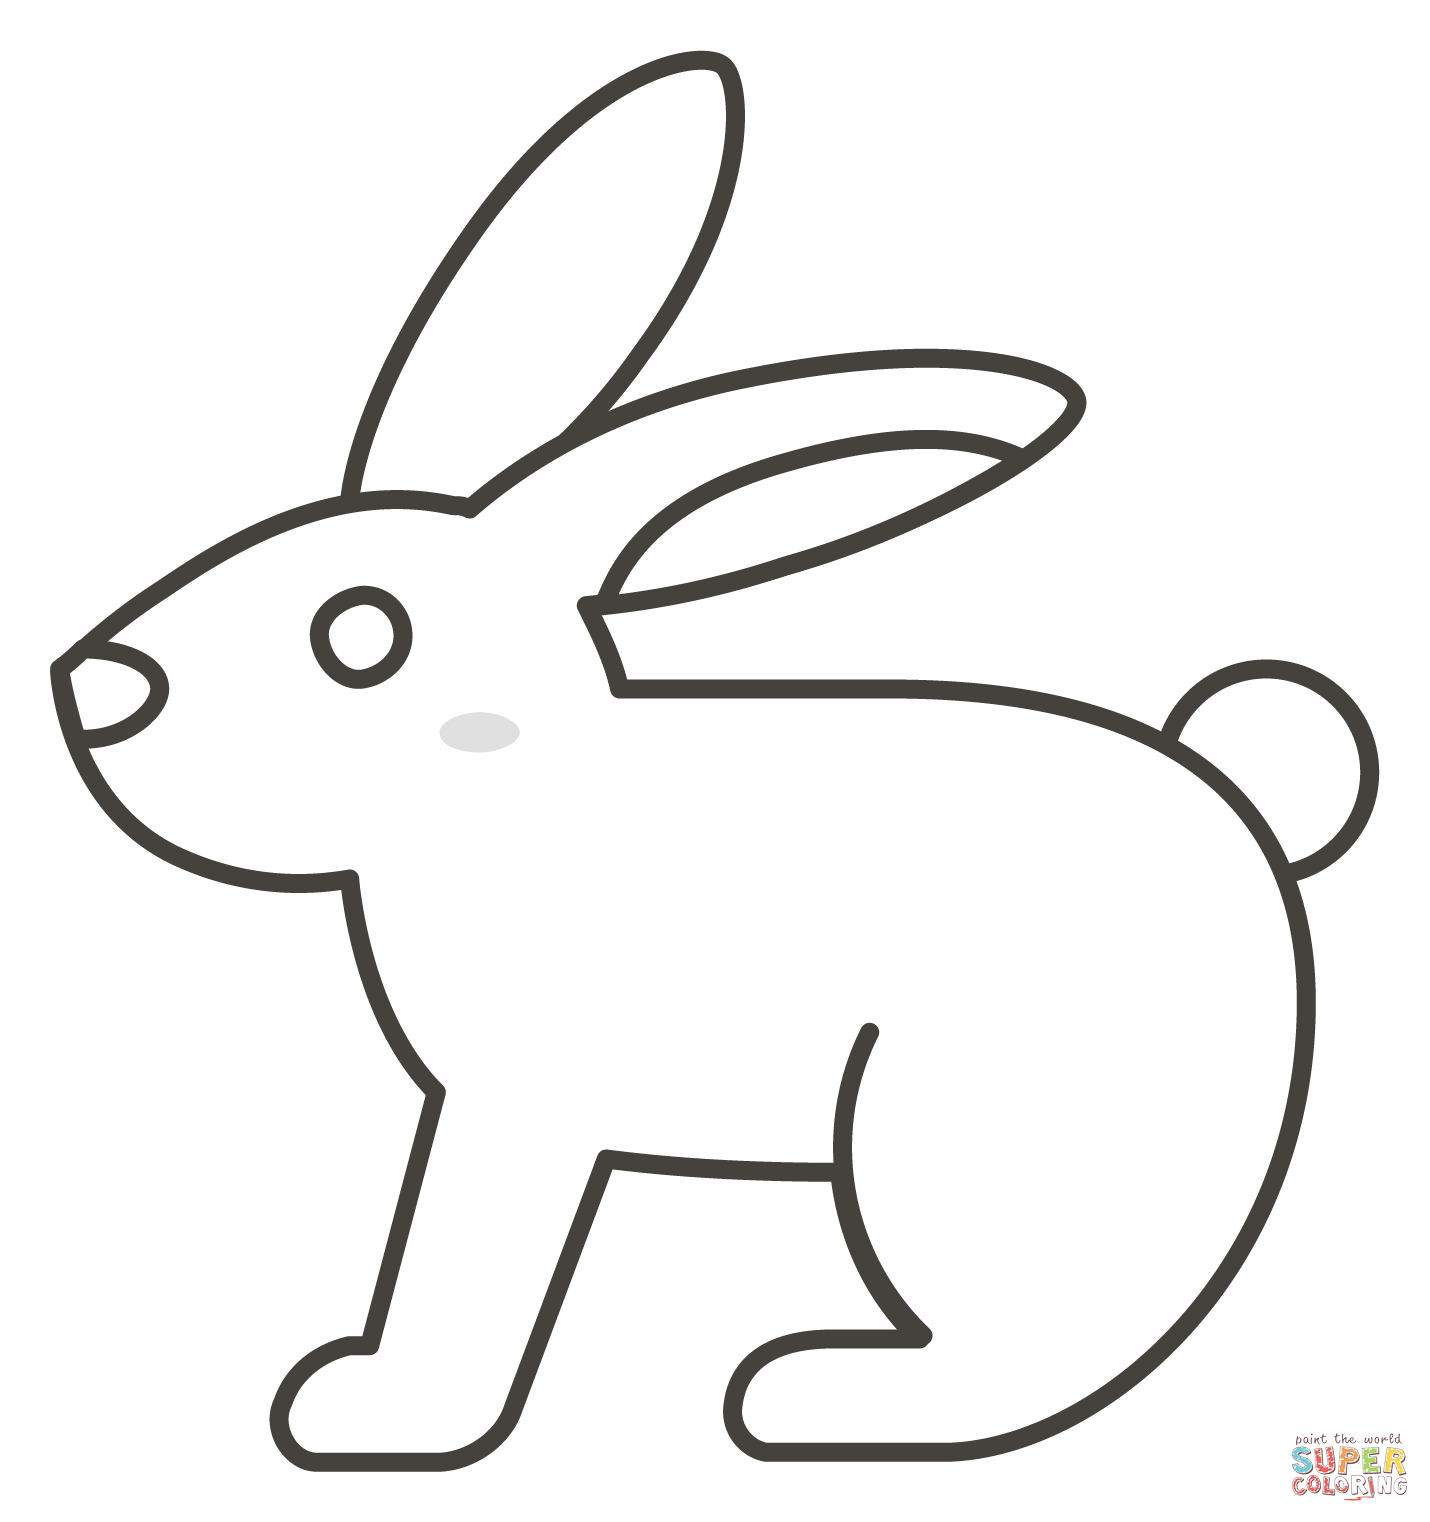 Dibujo de conejo para colorear dibujos para colorear imprimir gratis